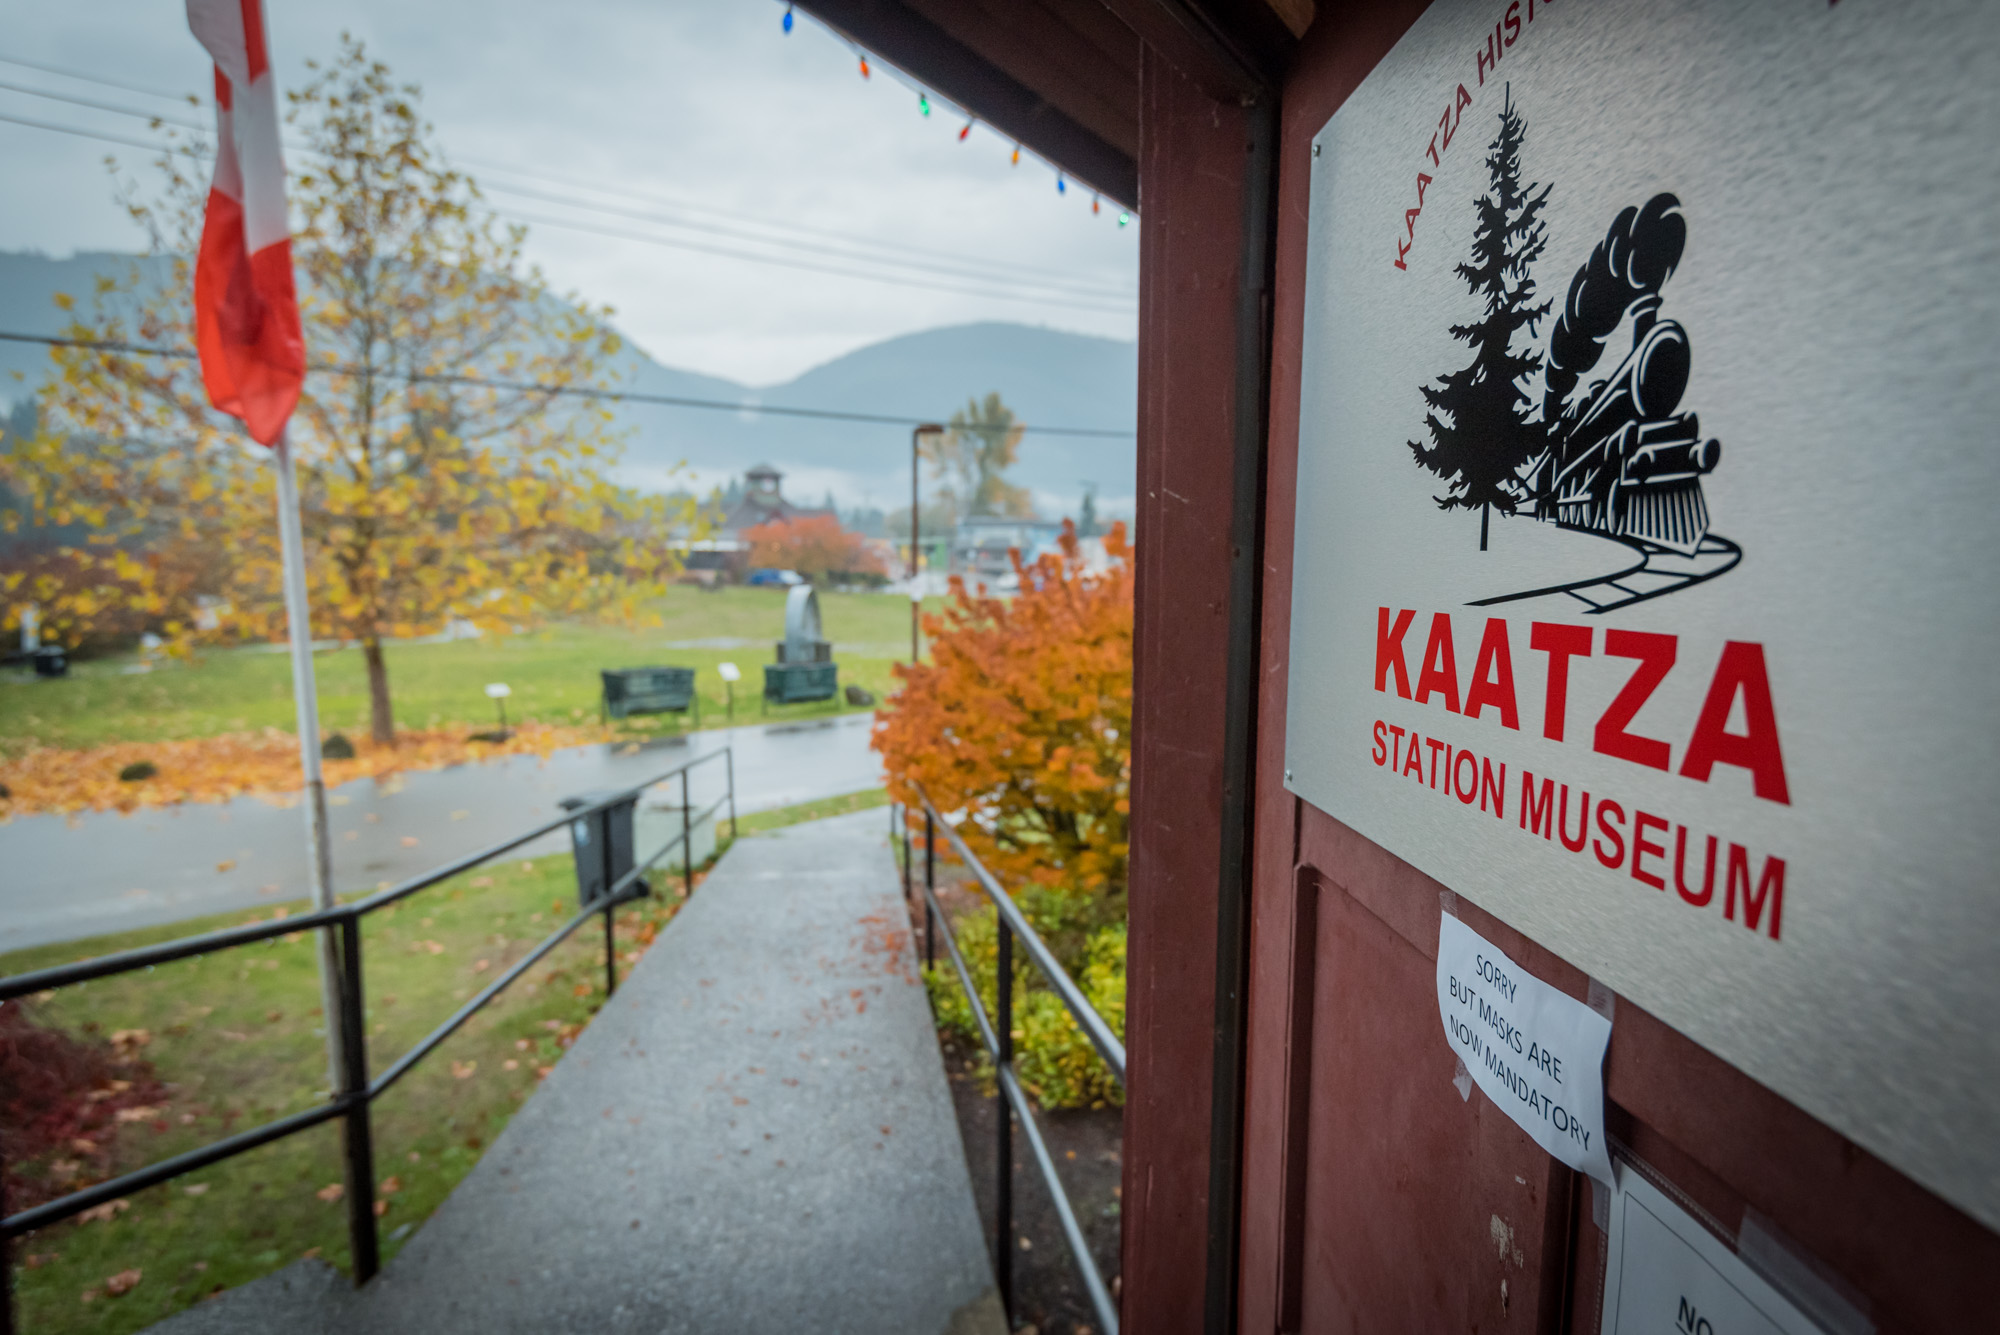 Kaatza Historical Society